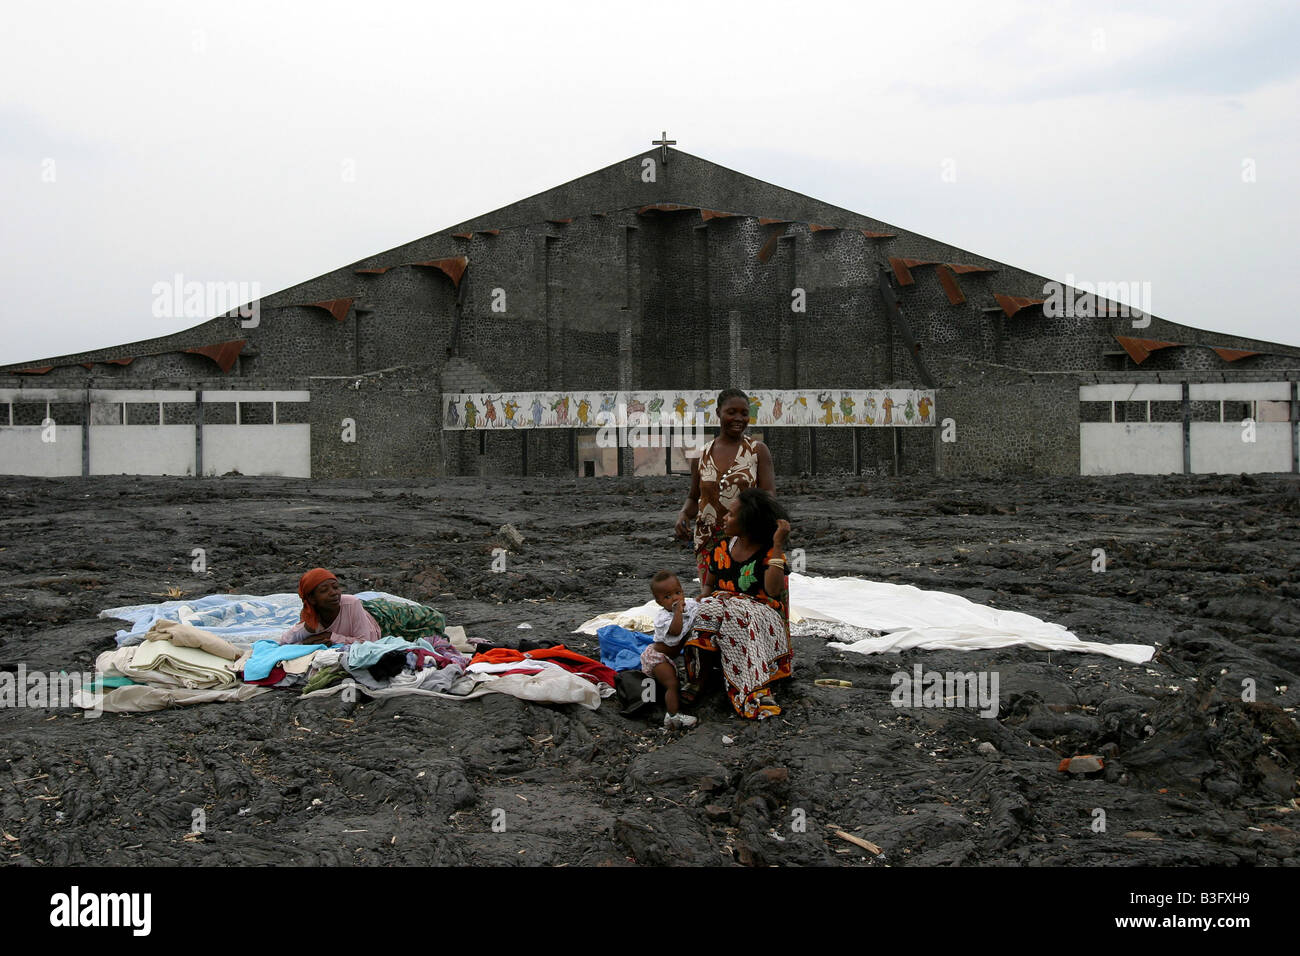 Die Nachwirkungen Der Nyiragongo Vulkan Eruption In Der Stadt Goma Kongo Stockfotografie Alamy